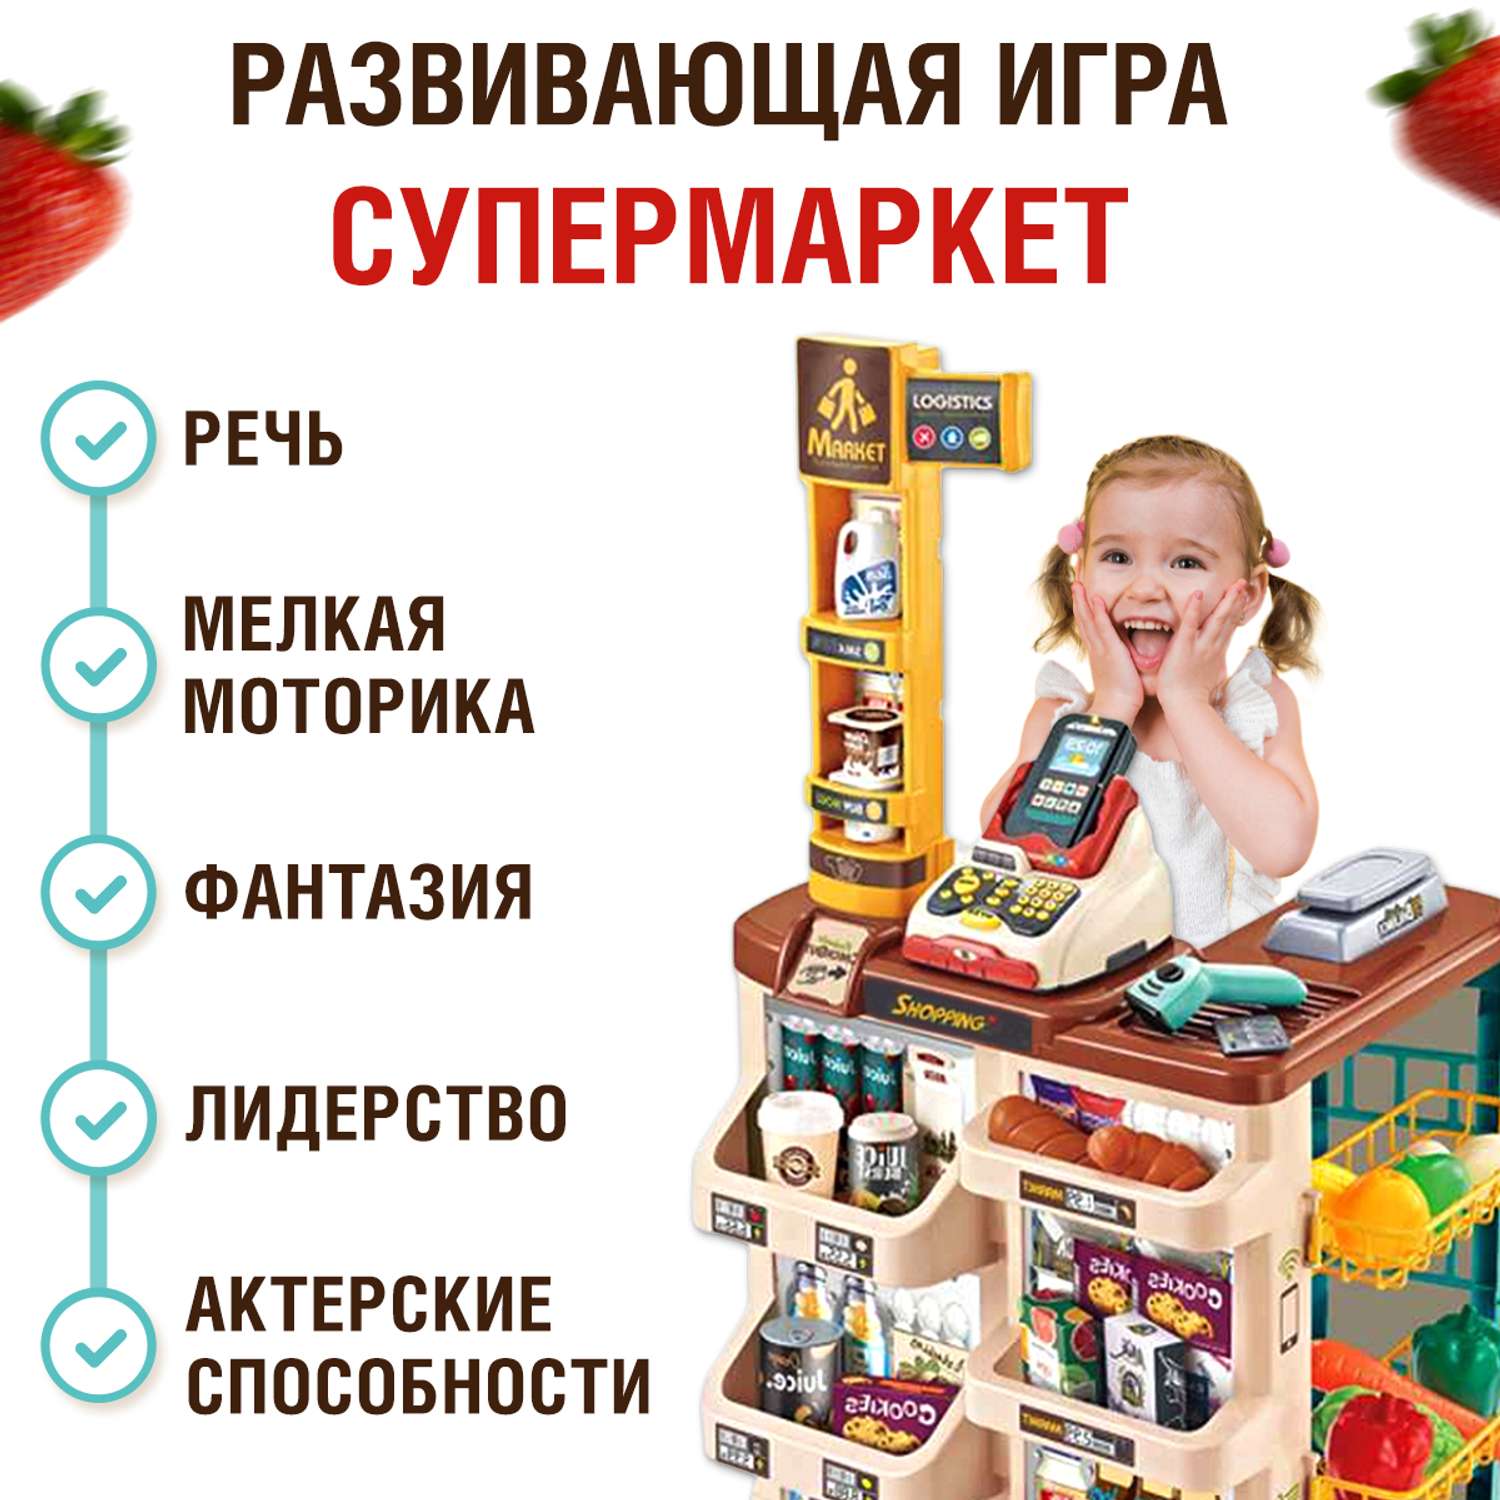 Супермаркет детский FAIRYMARY игрушечный со звуком и светом - фото 2